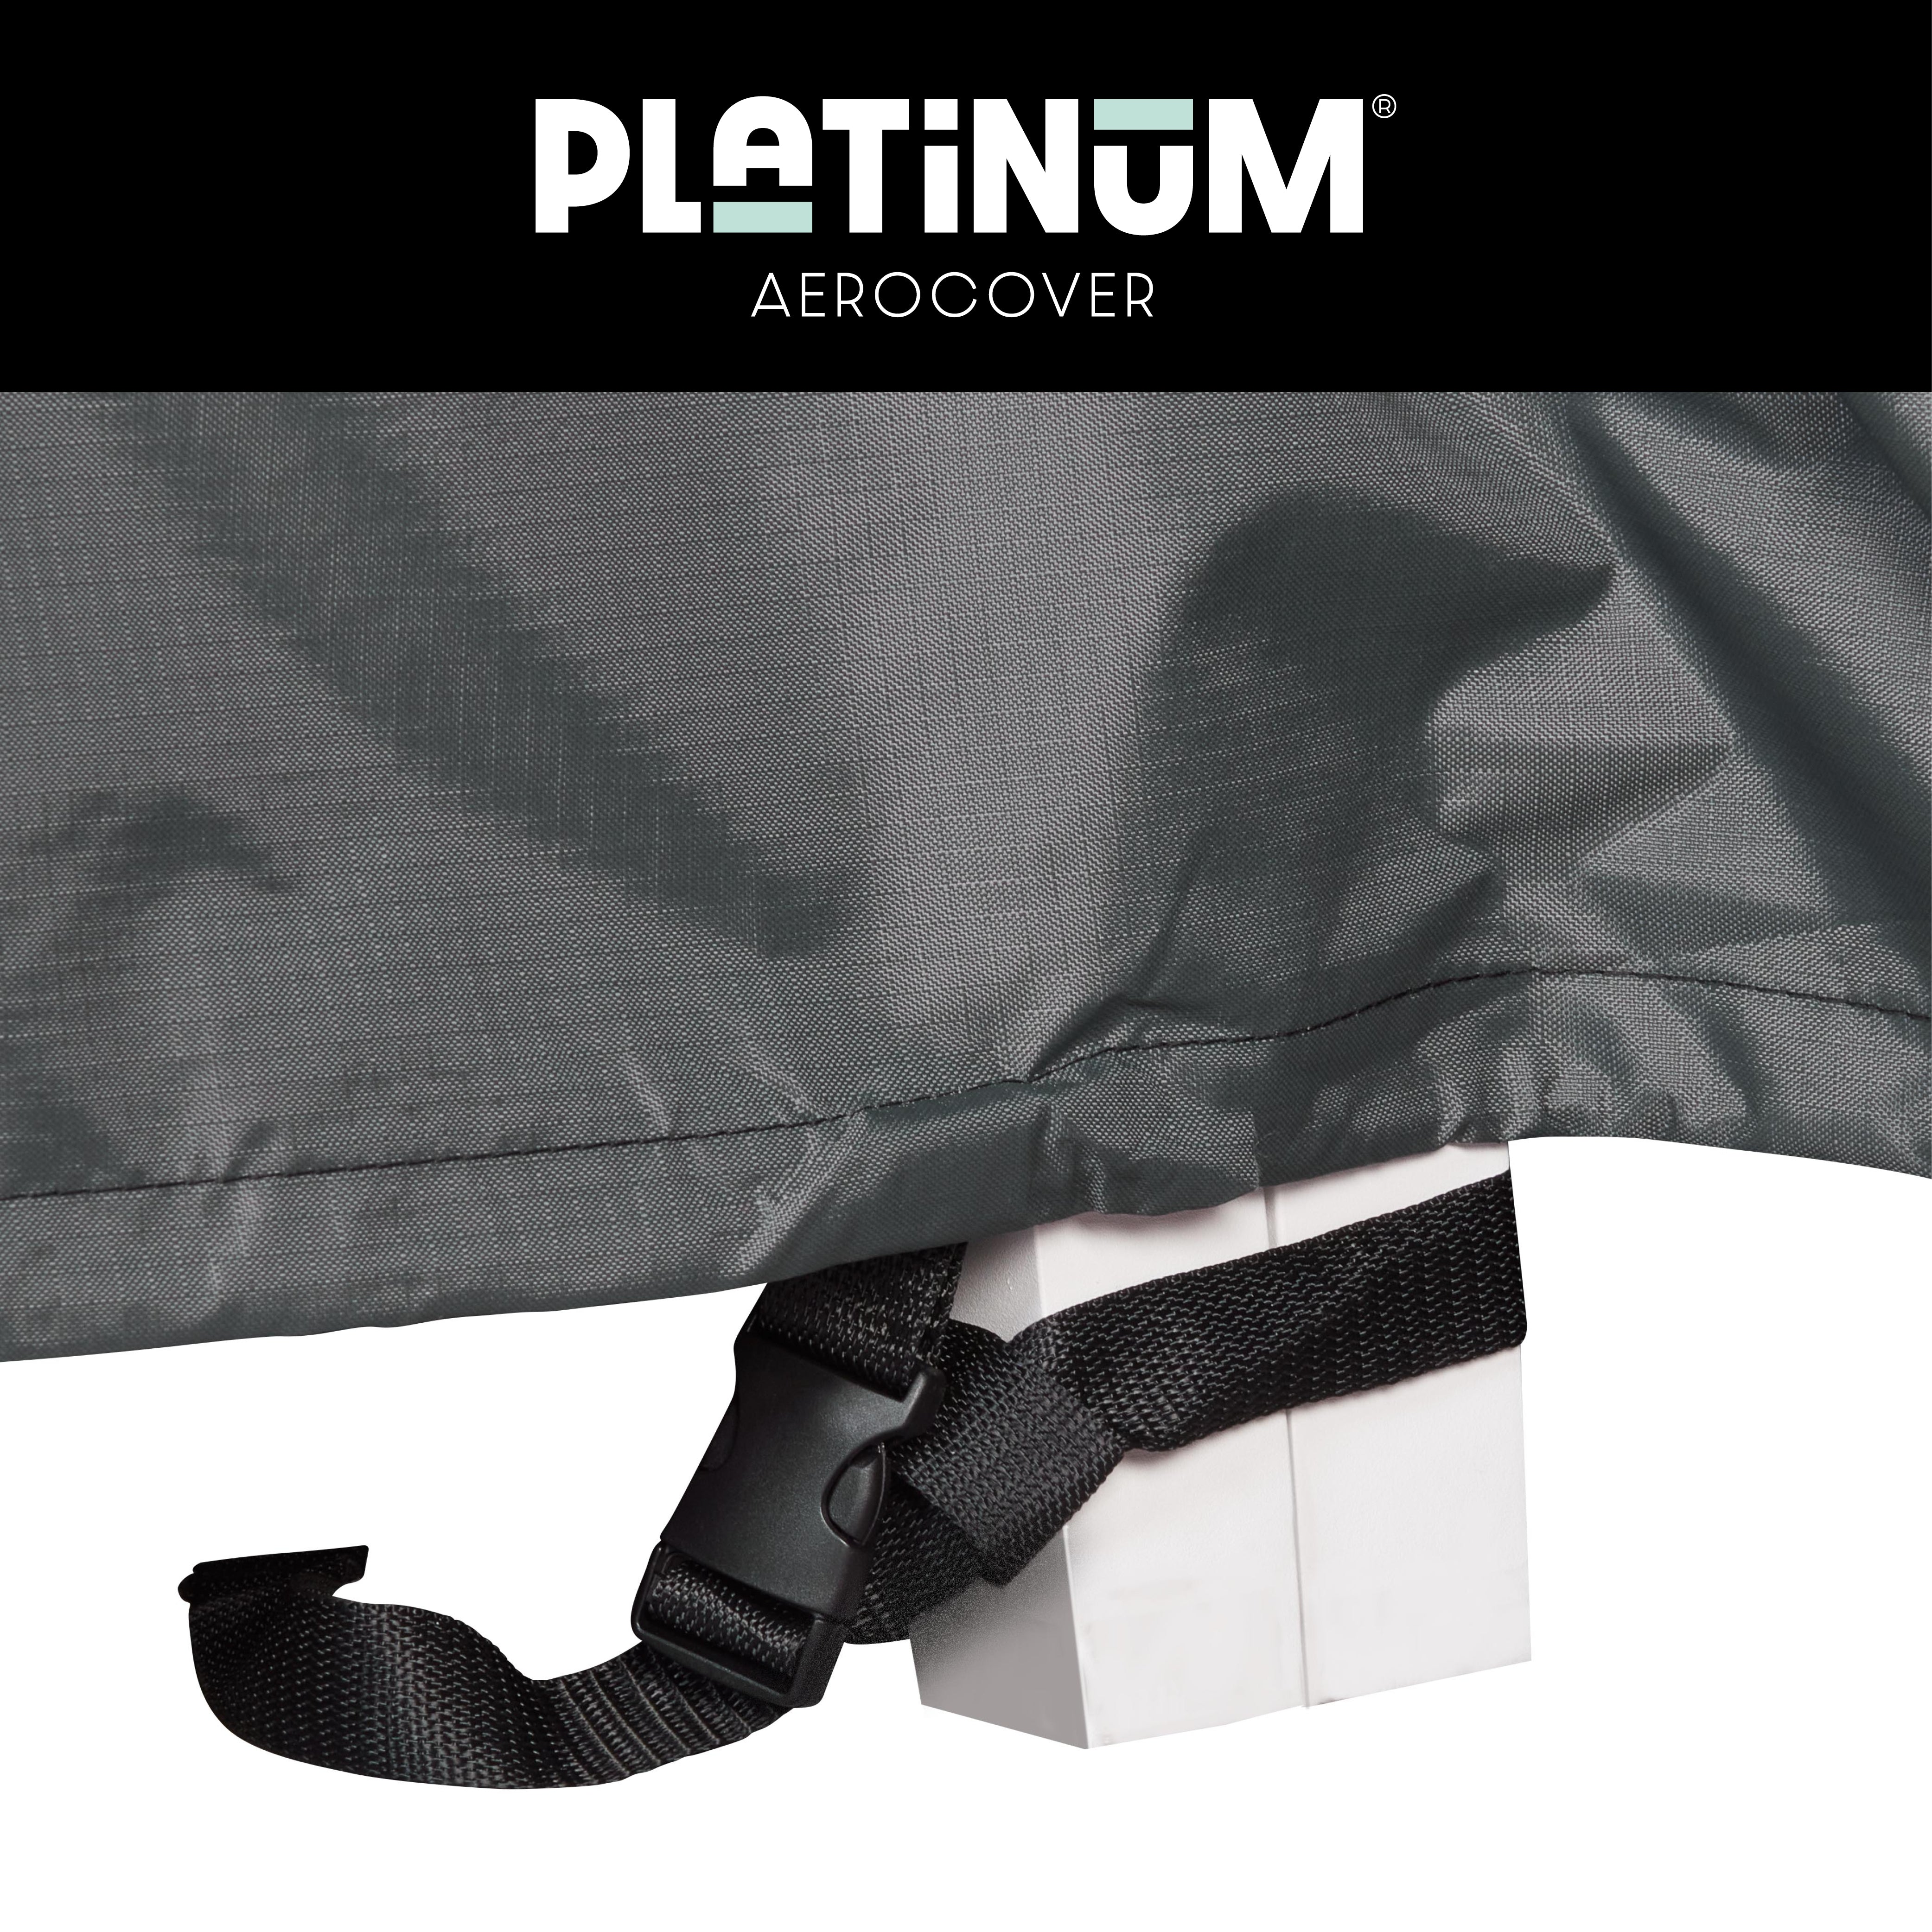 Platinum Loungesethoes hoekset 235x235x100xH70